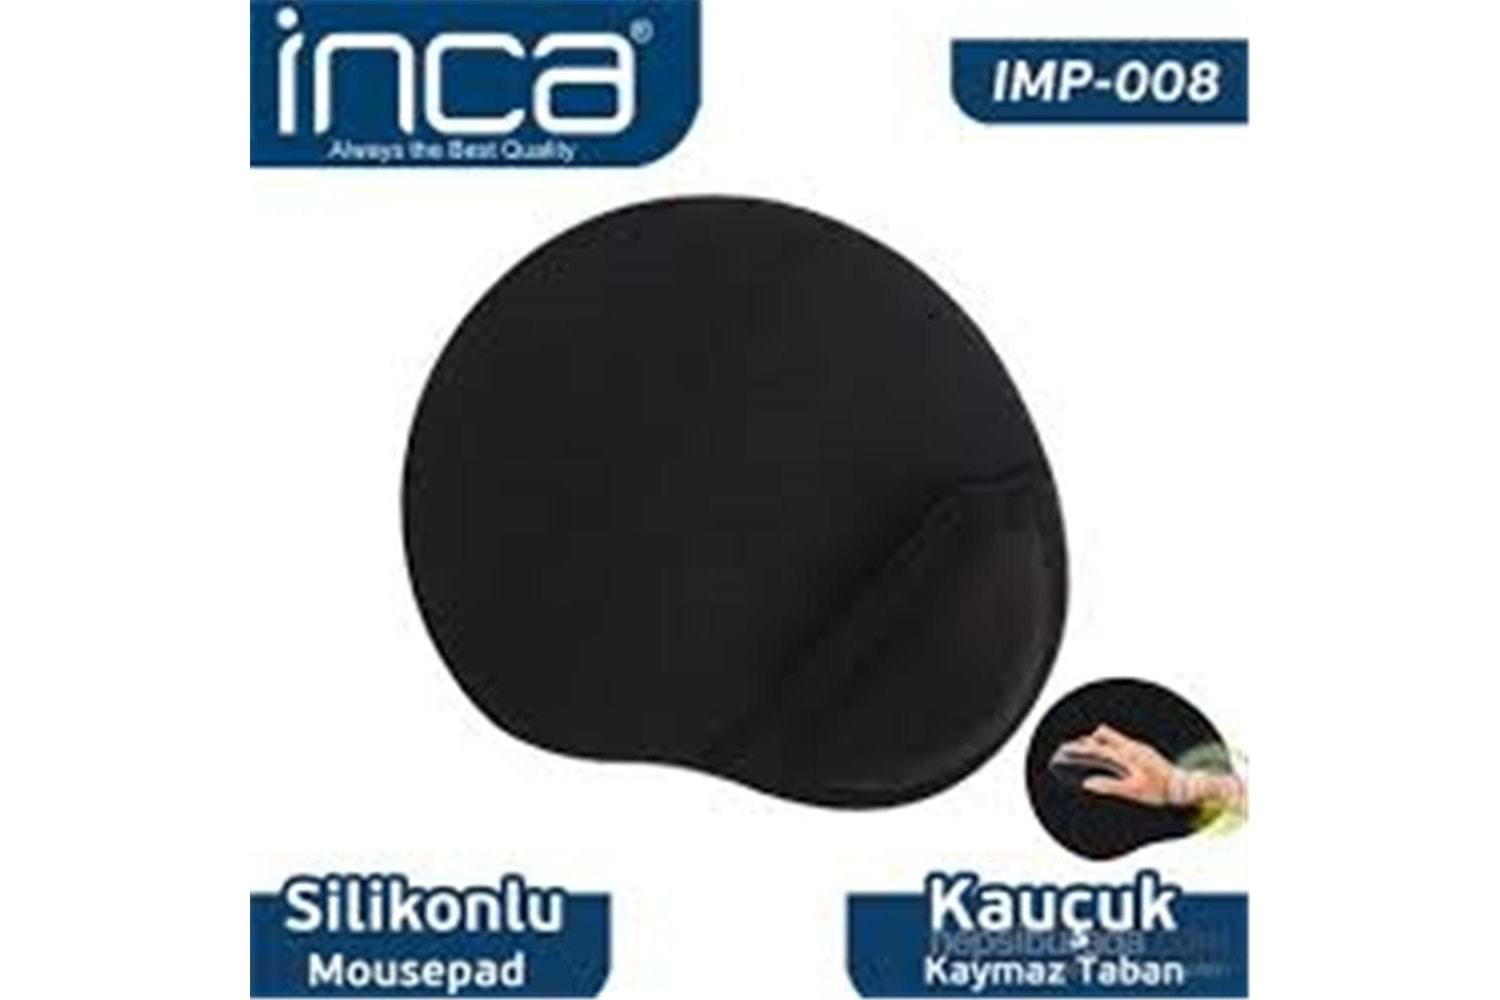 Inca IMPS-008 Sılıcone Siyah Mouse Pad (kaymaz taban)